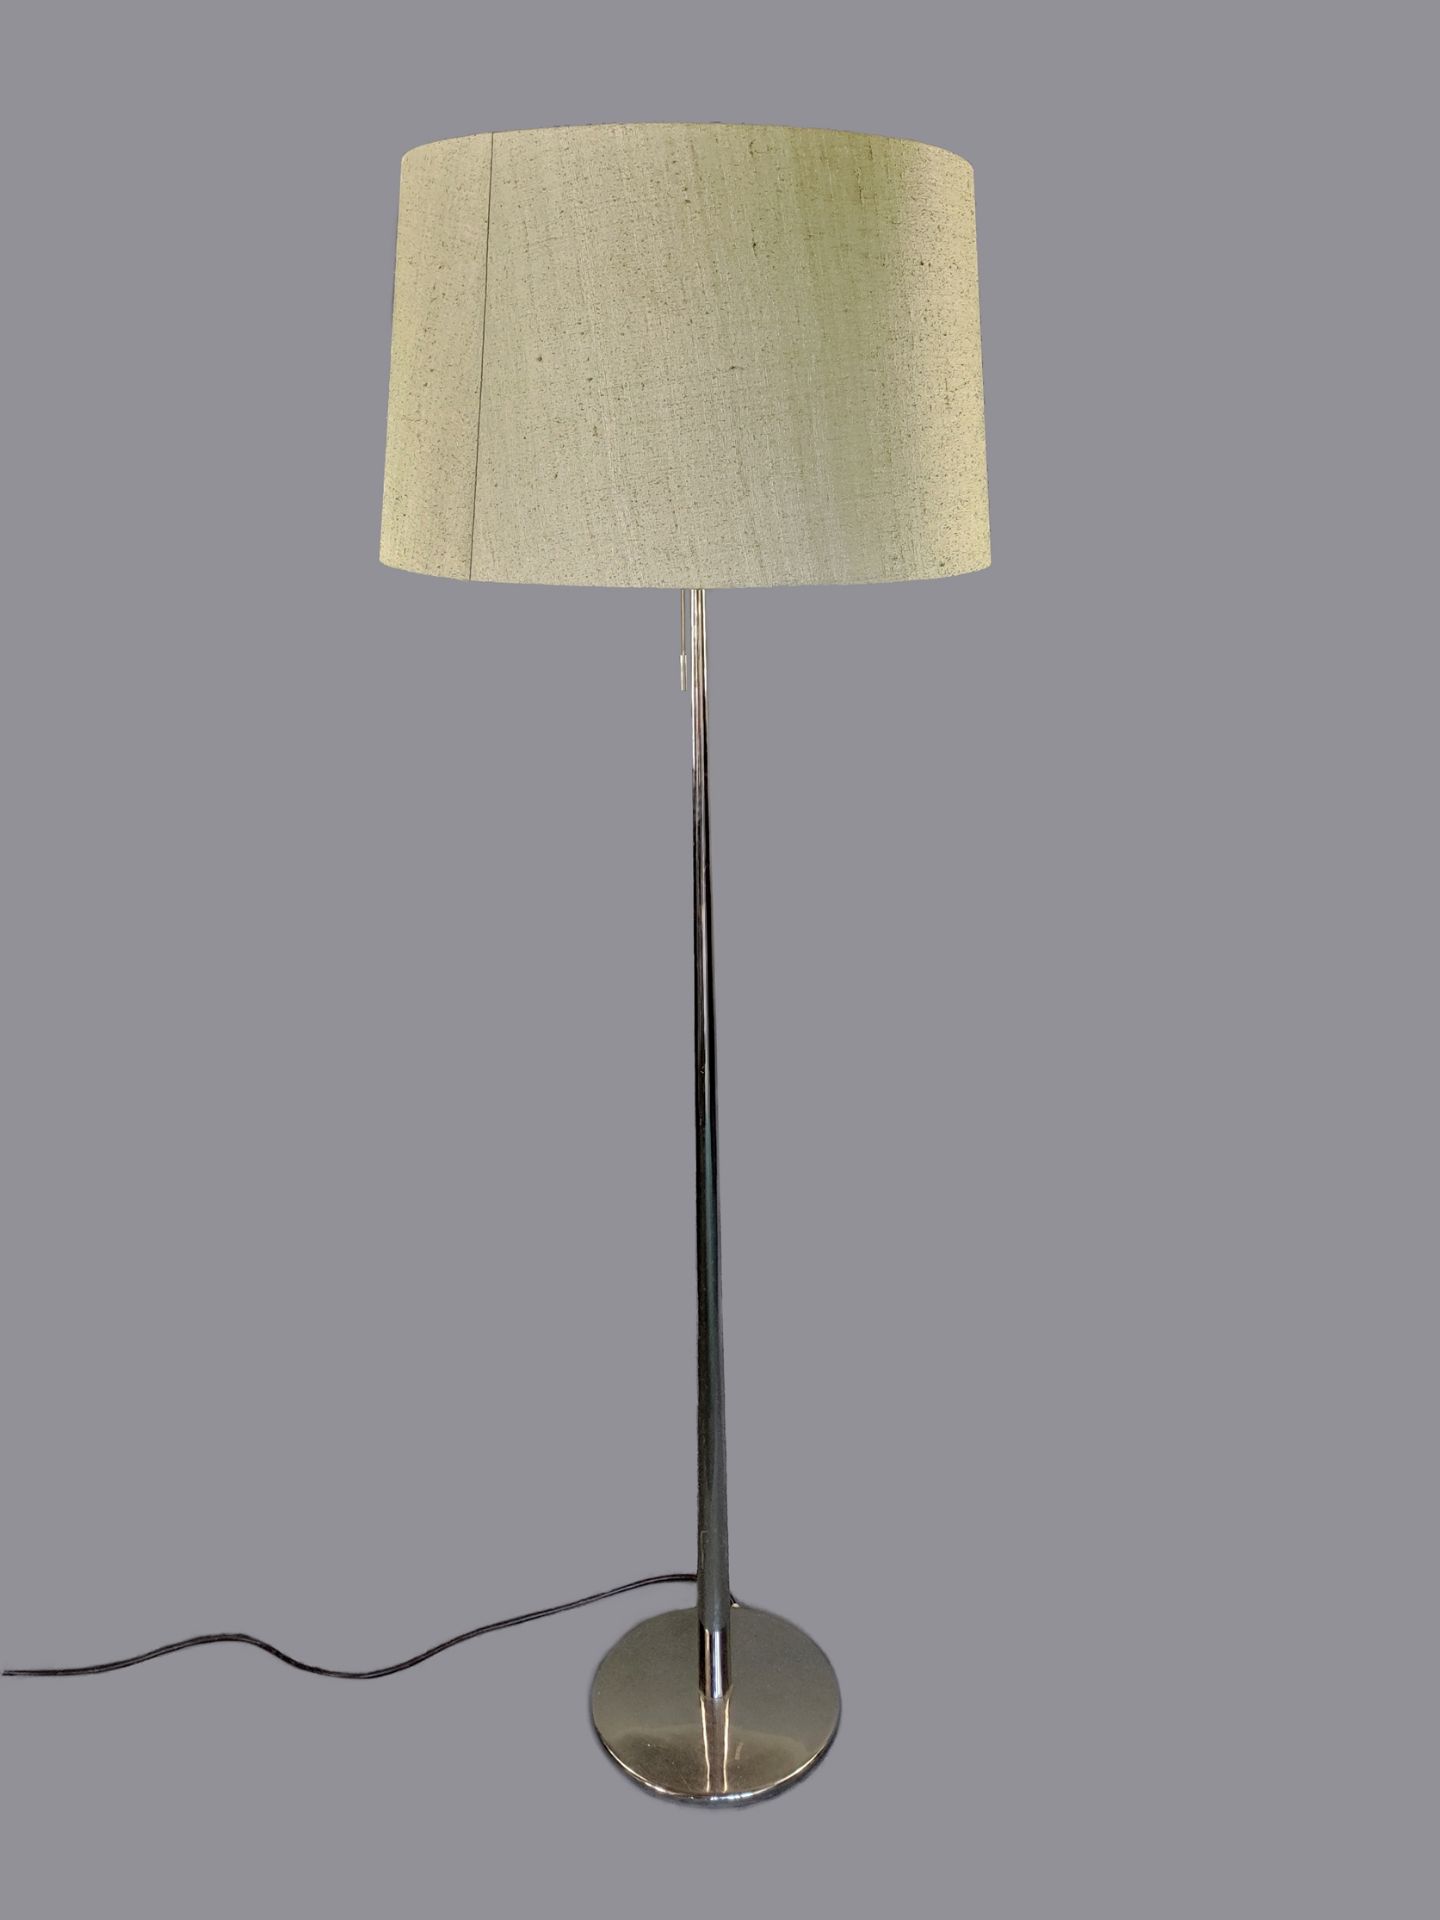 Design-Stehlampe, 1960/70er Jahre, verchromtes Metallgestell, konisch geformter Schaft über flachem